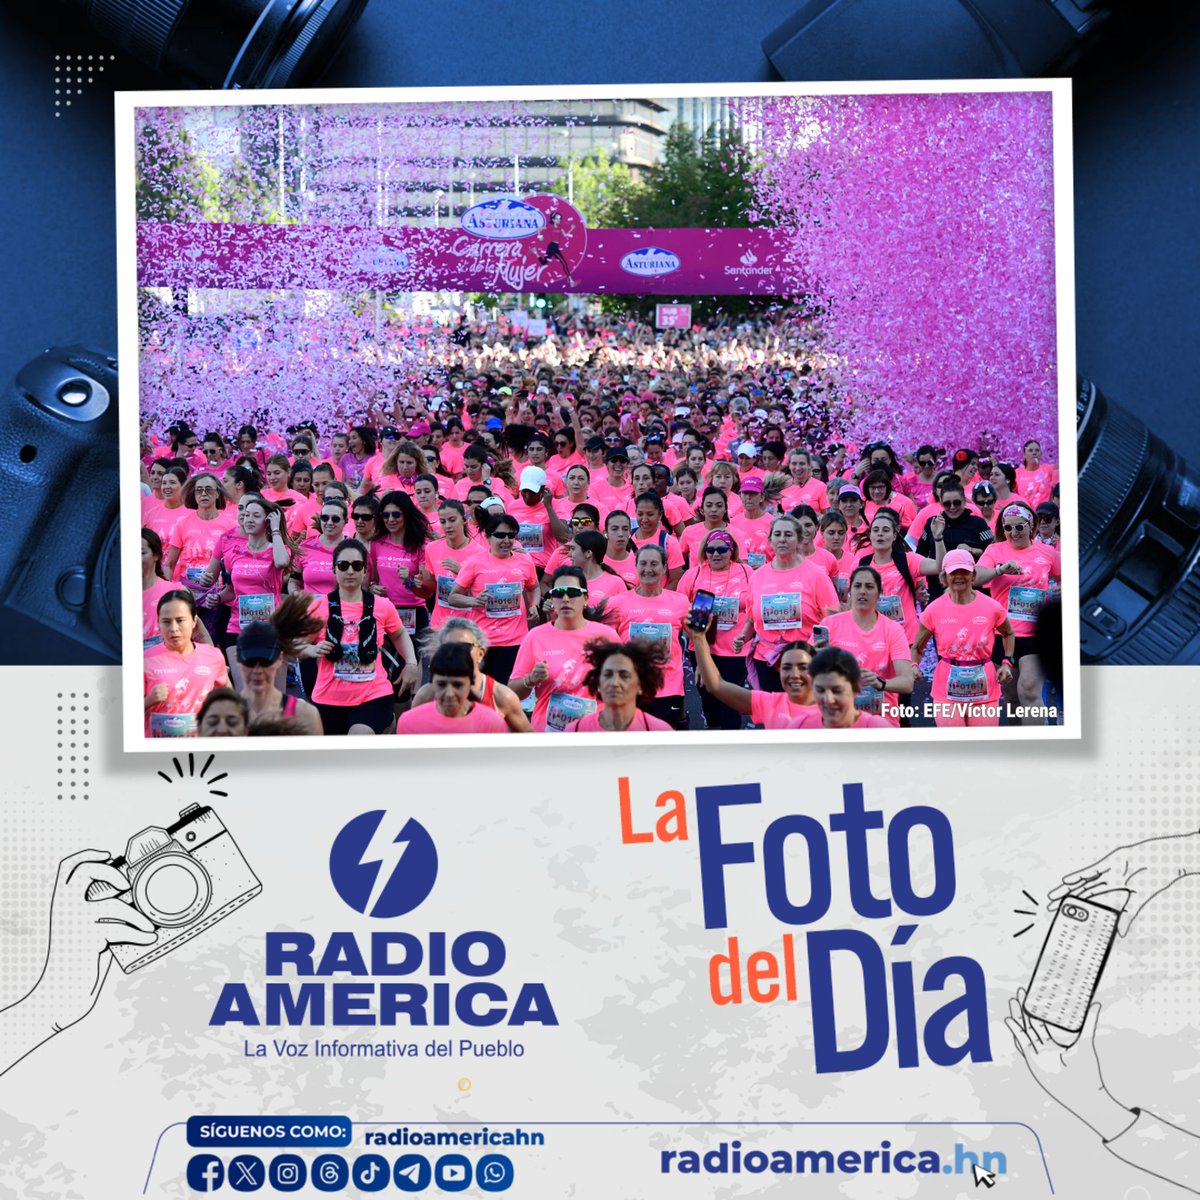 📸 Miles de mujeres toman la salida en la Carrera de la Mujer de Madrid, España la cual tiene como objetivo recaudar fondos para investigaciones relacionadas contra el cáncer. 👉 La carrera se realizó este domingo en la capital española. #FotodelDía #RadioAmérica 📷 EFE/Víctor…